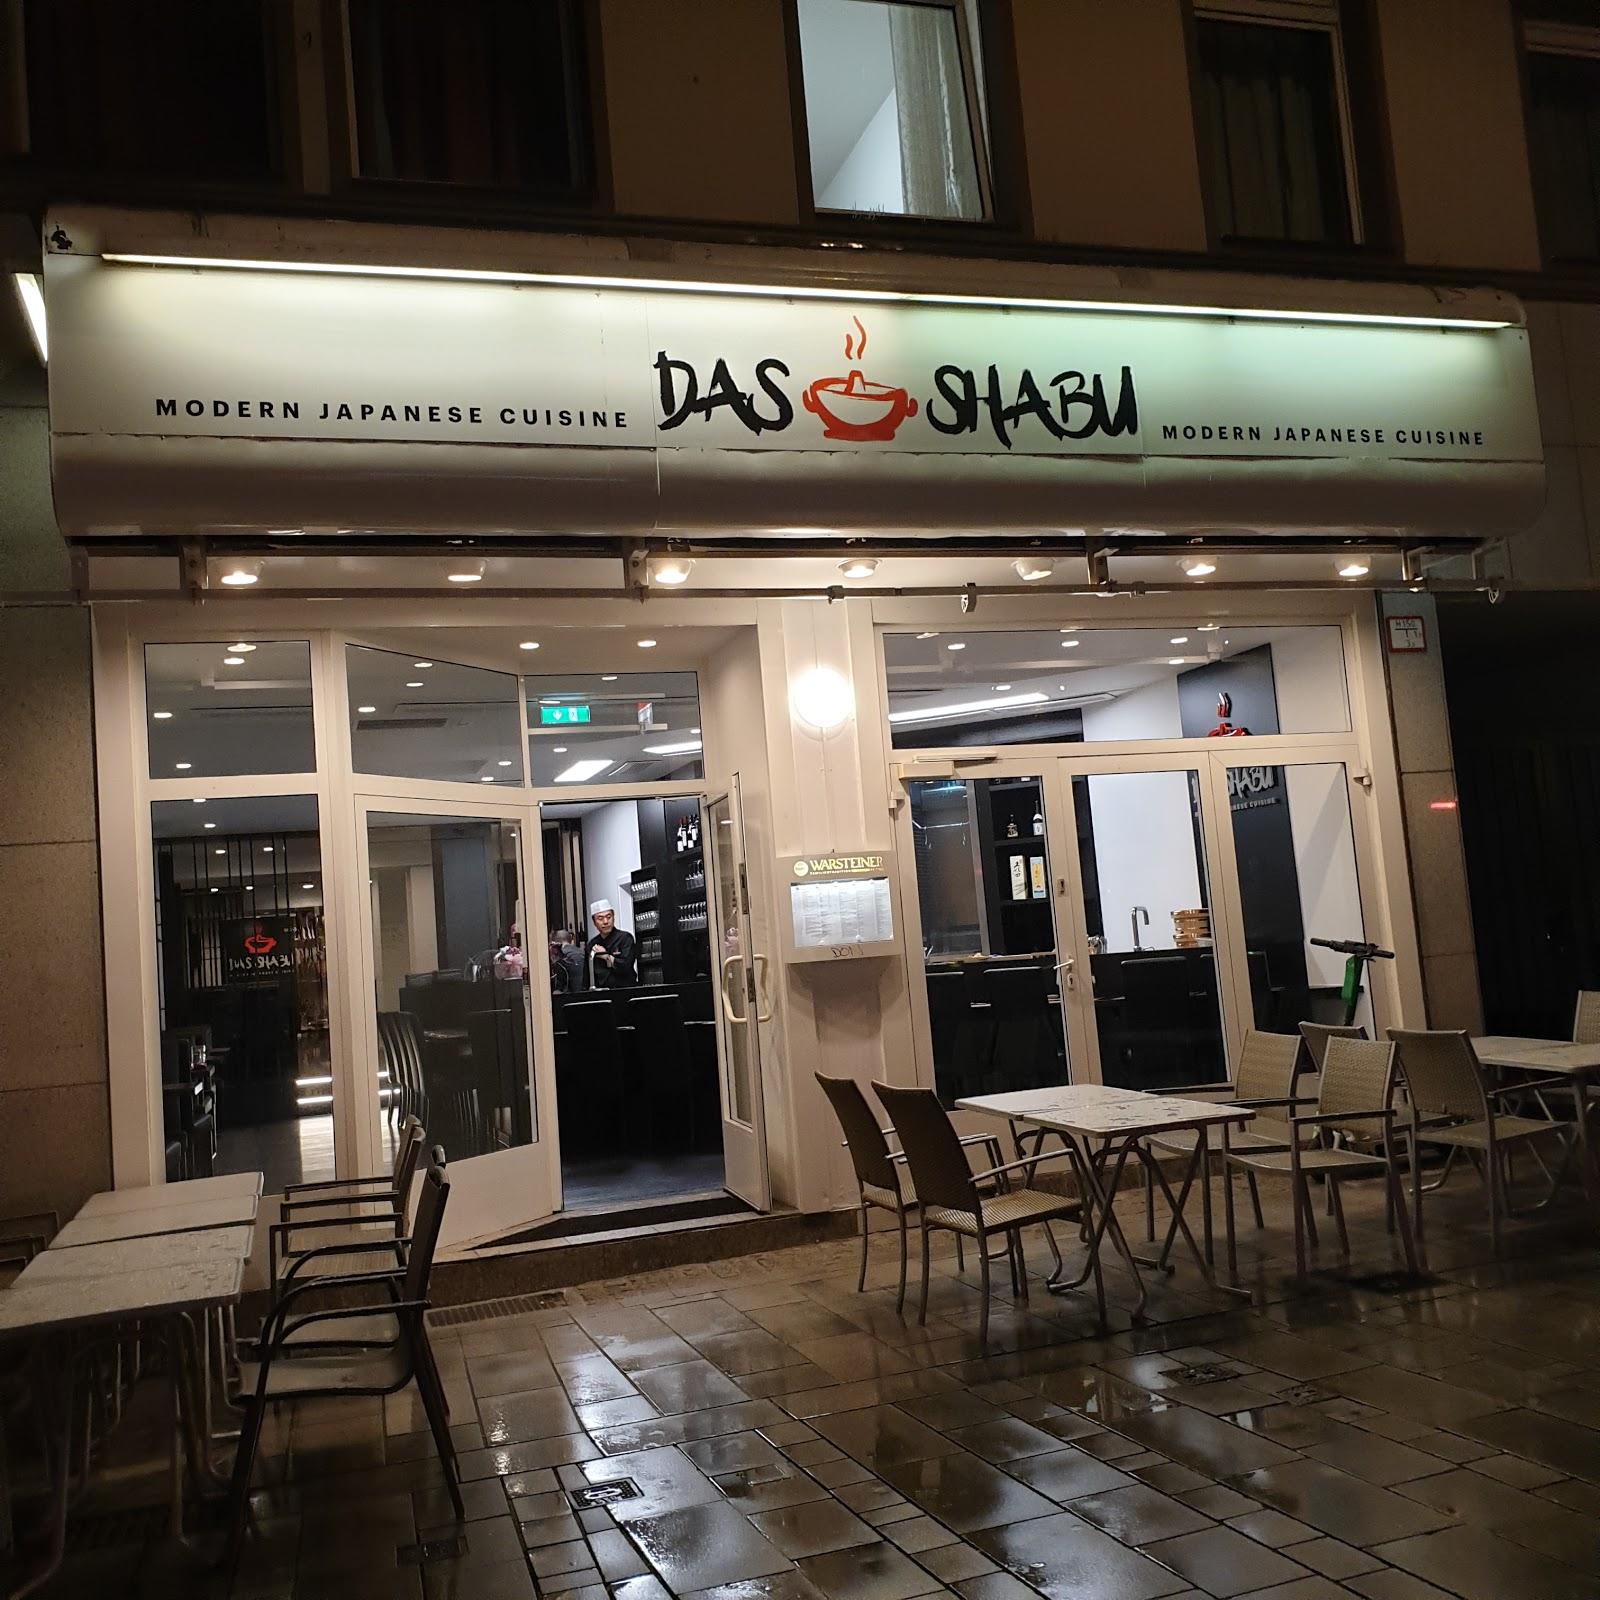 Restaurant "Das Shabu" in Düsseldorf